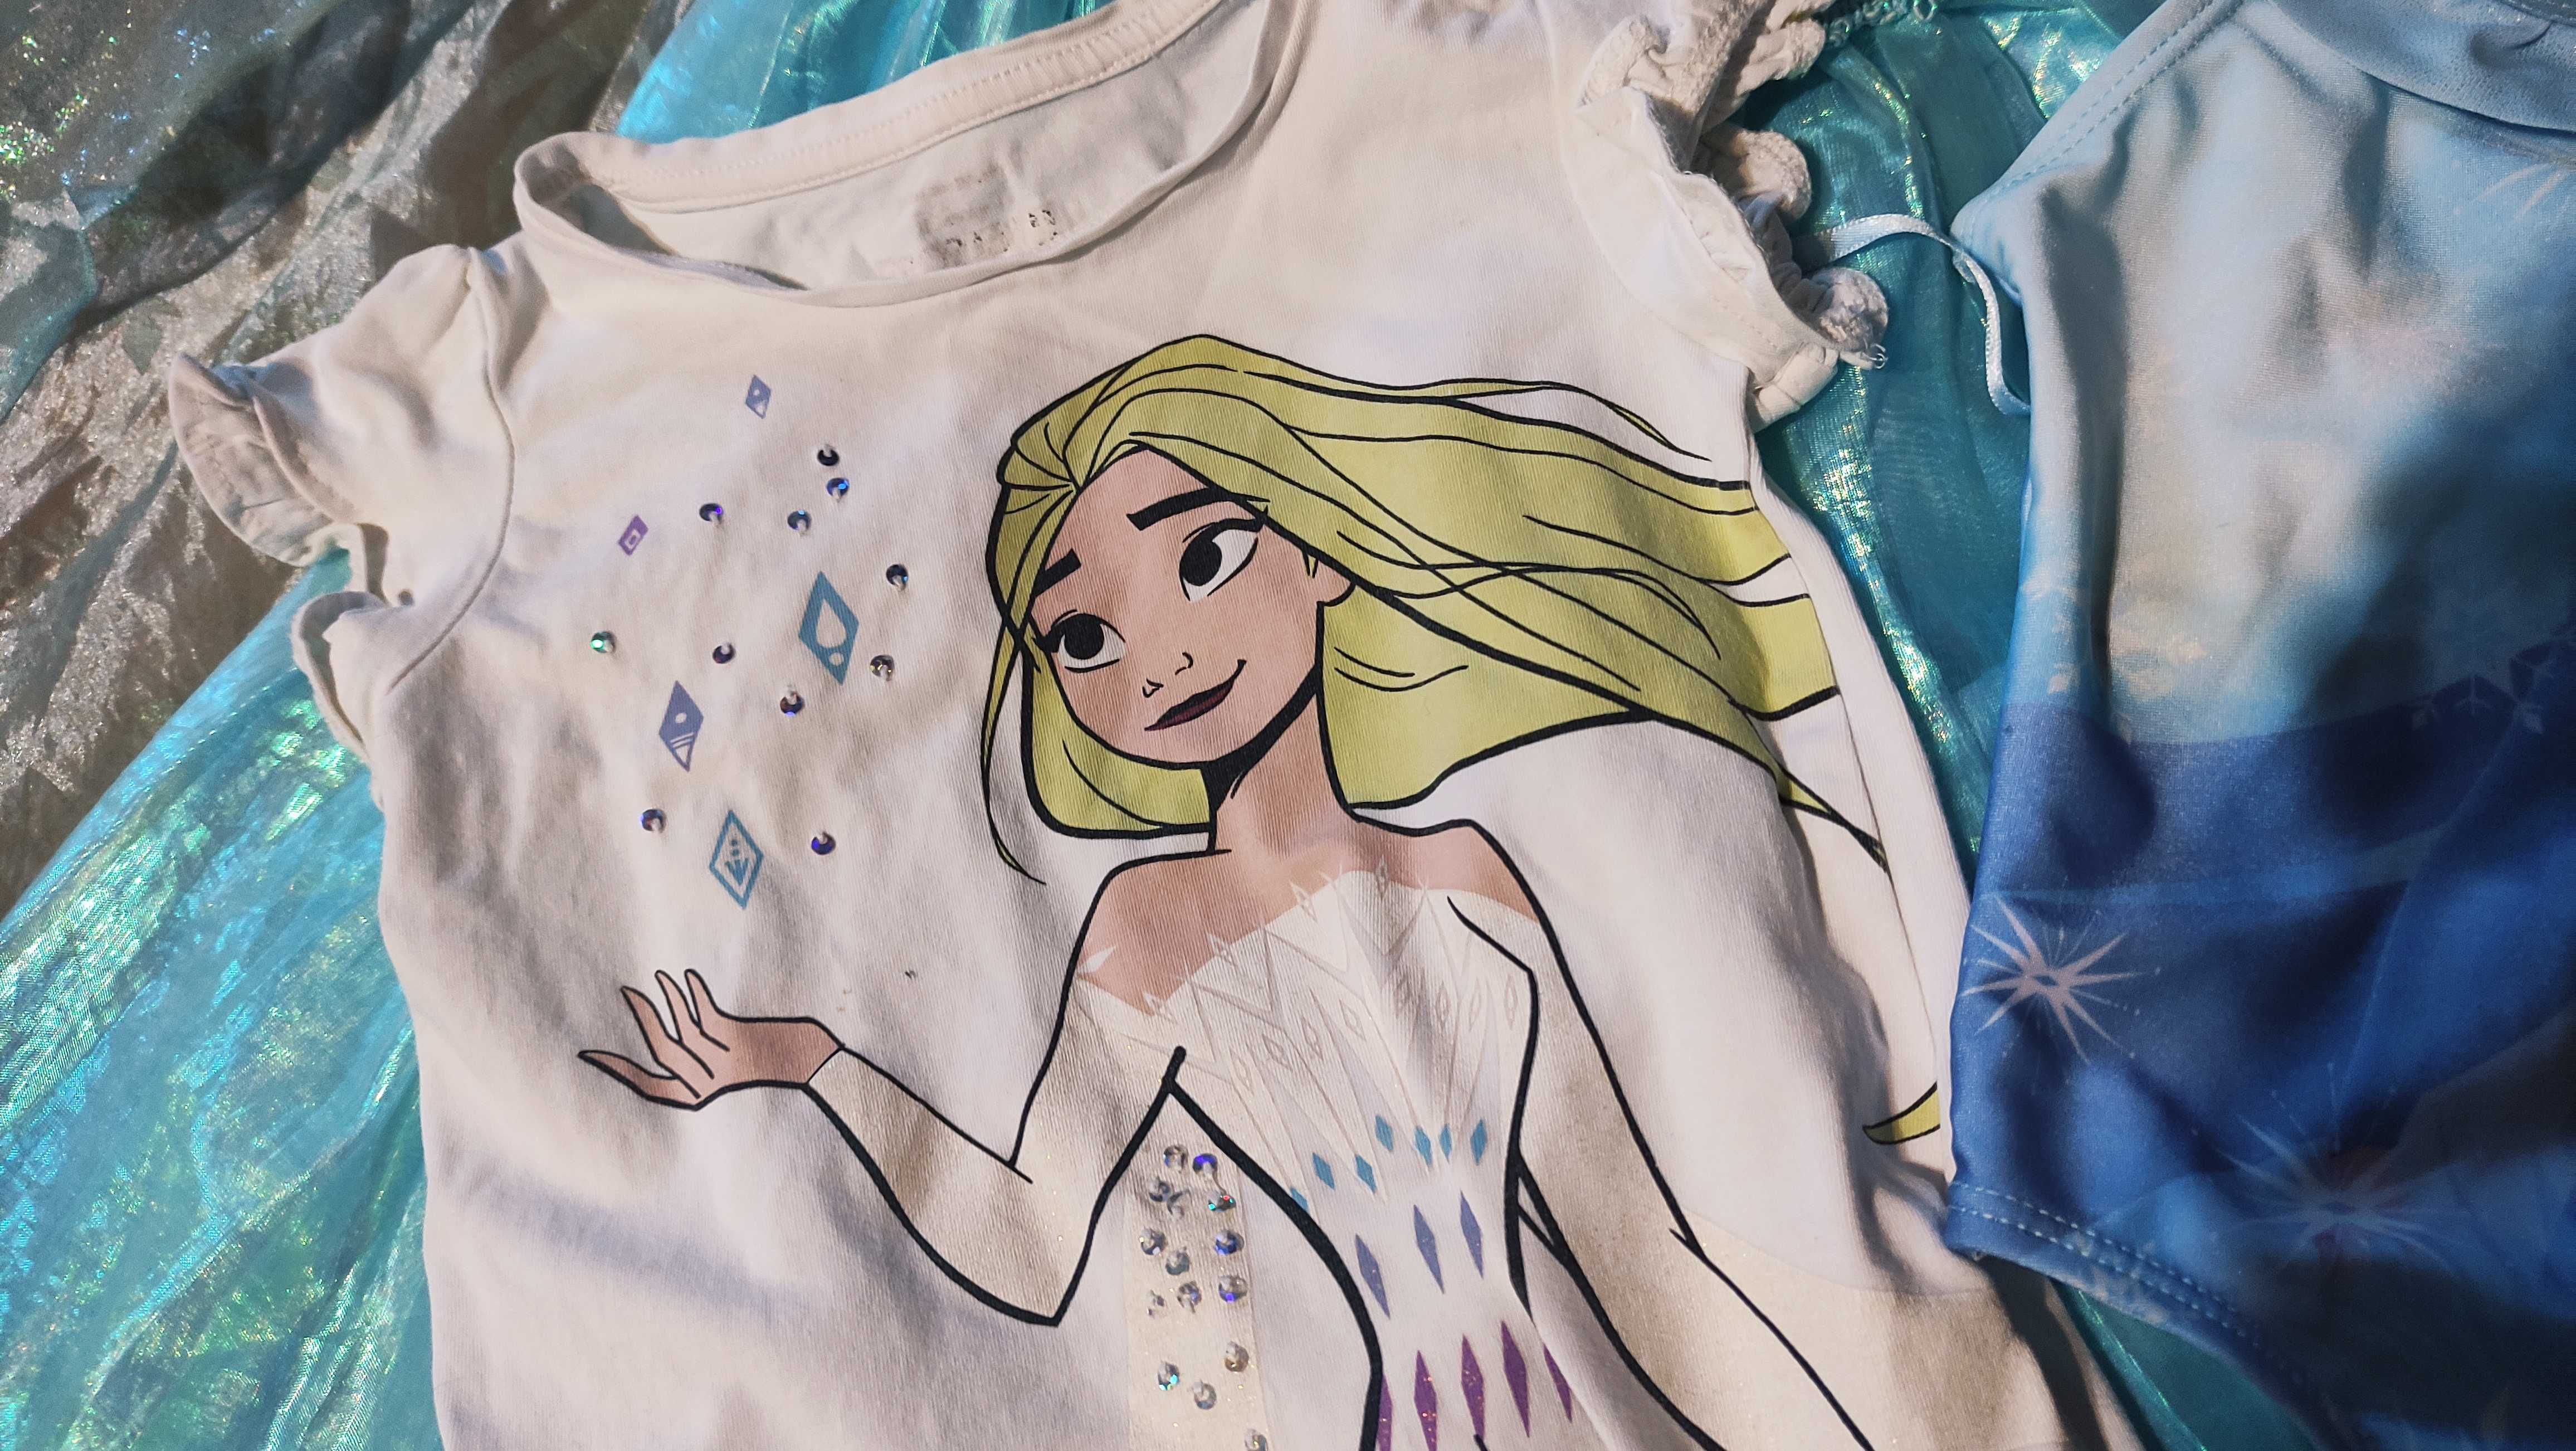 Verão fato de banho + t-shirt Frozen 2 Elsa princesa 3 anos, desocupar